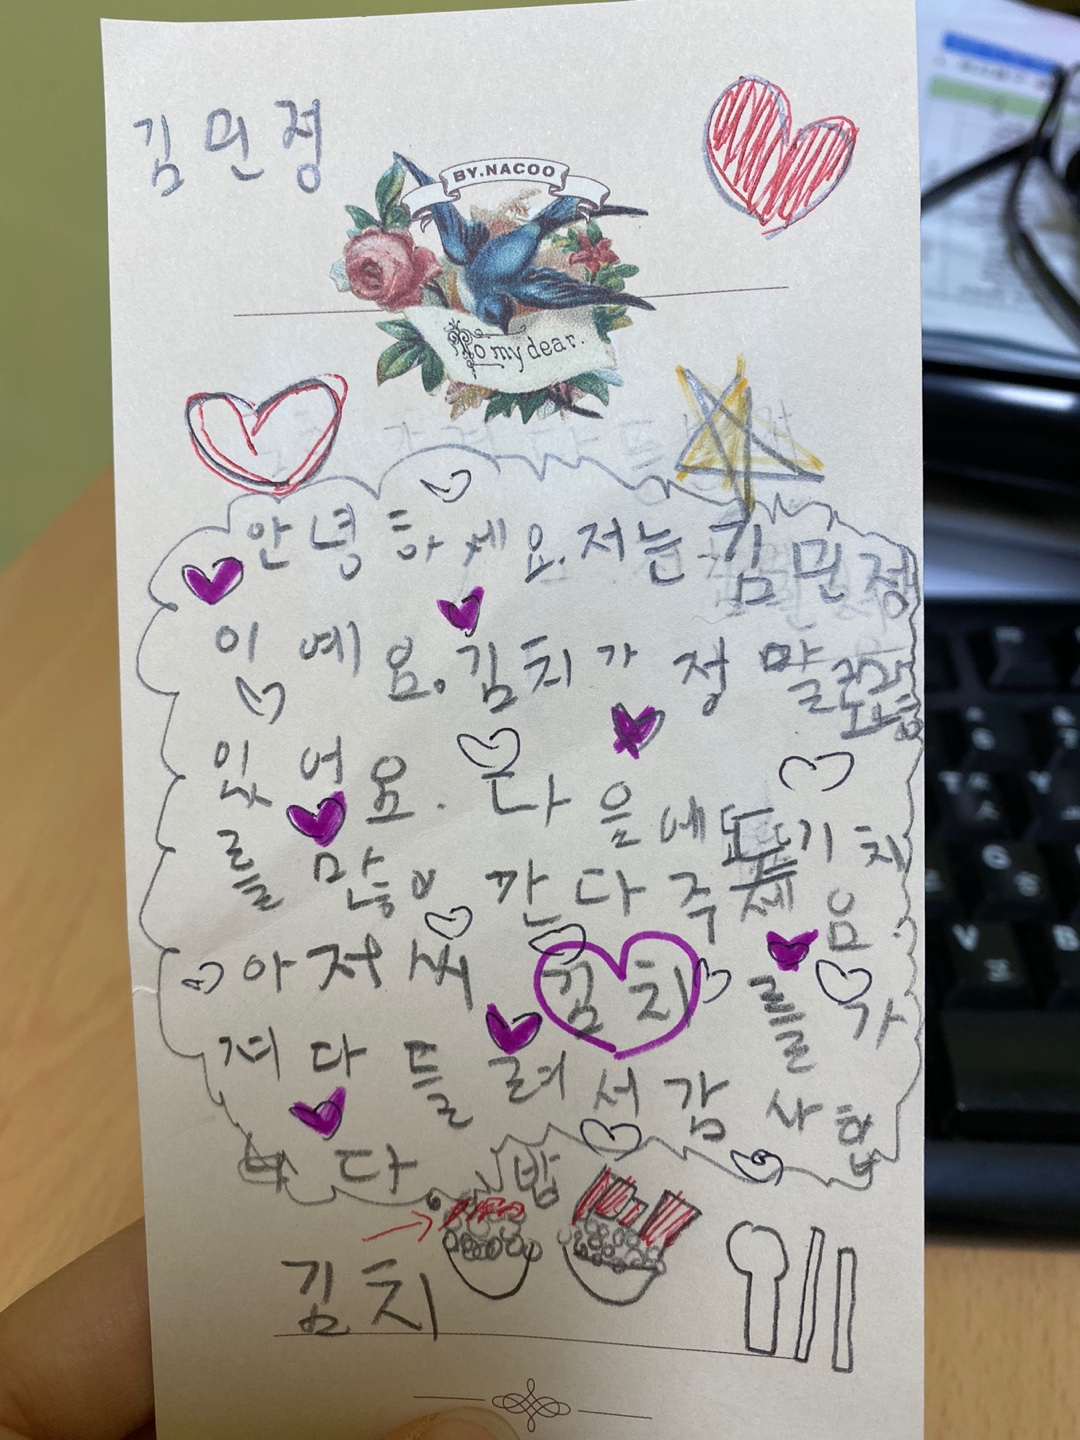 초등학교 2학년 김민정 학생의 편지 입니다. 